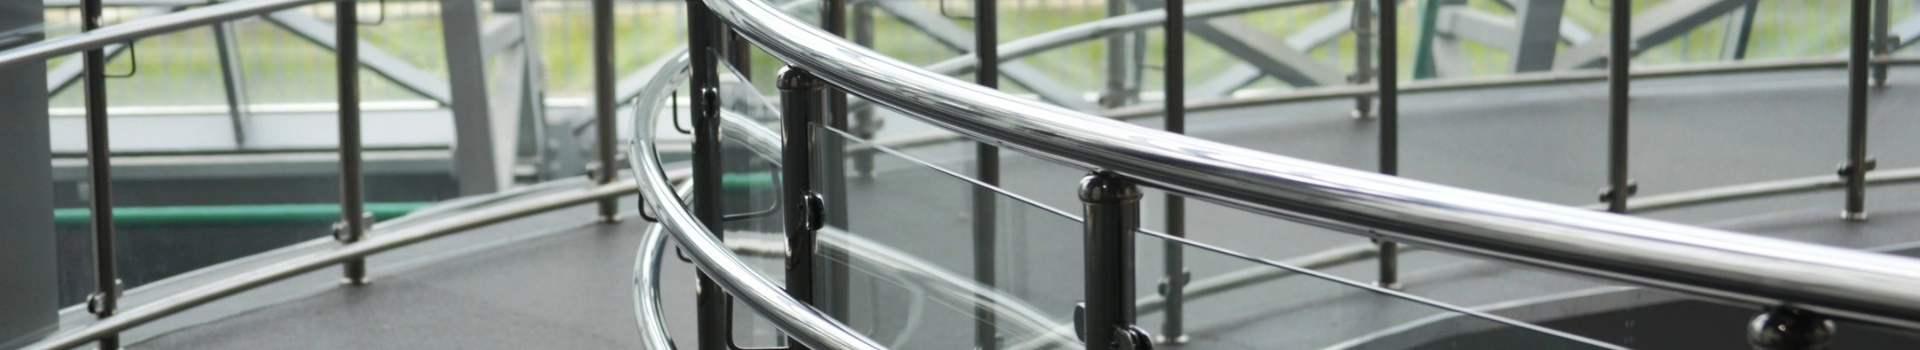 metalowa balustrada zabezpieczona szybą